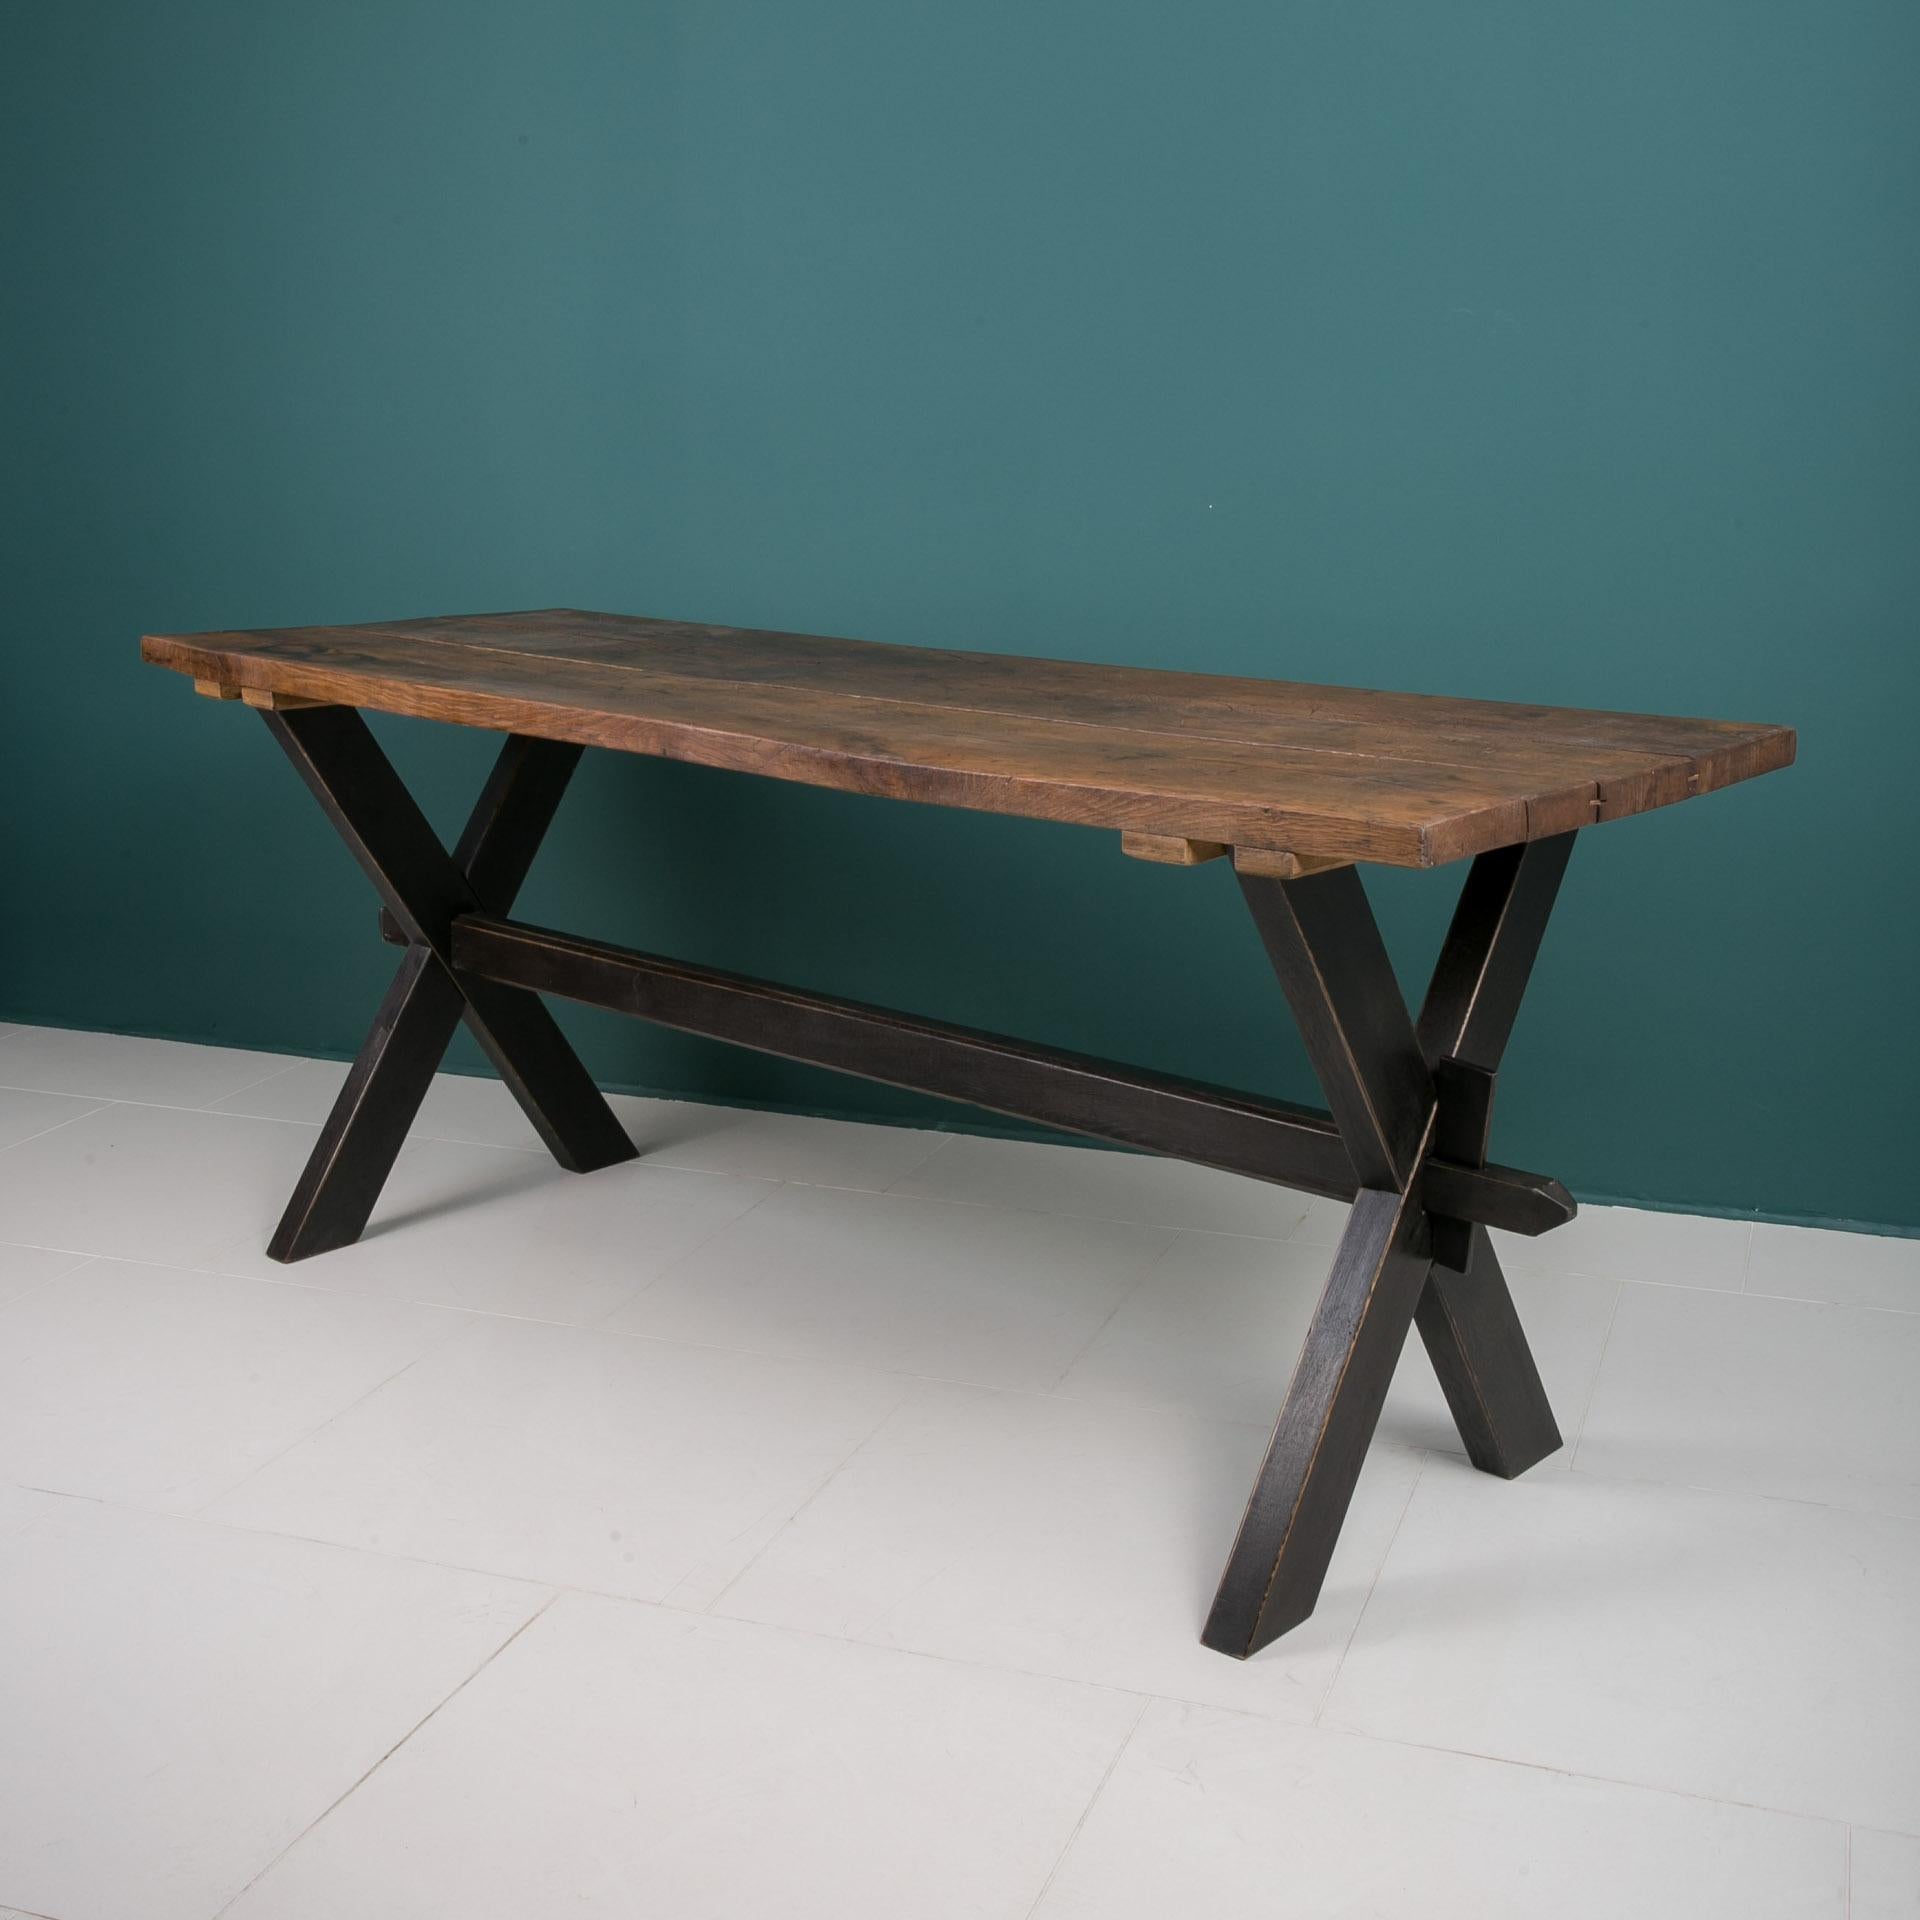 Dieser Tisch stammt aus Deutschland und wurde zu Beginn des 20. Er ist aus massivem Eichenholz gefertigt. Er hat im Laufe der Jahre eine einzigartige Patina angenommen. Die Tischplatte besteht aus drei breiten Eichenbrettern. Das Stück wurde